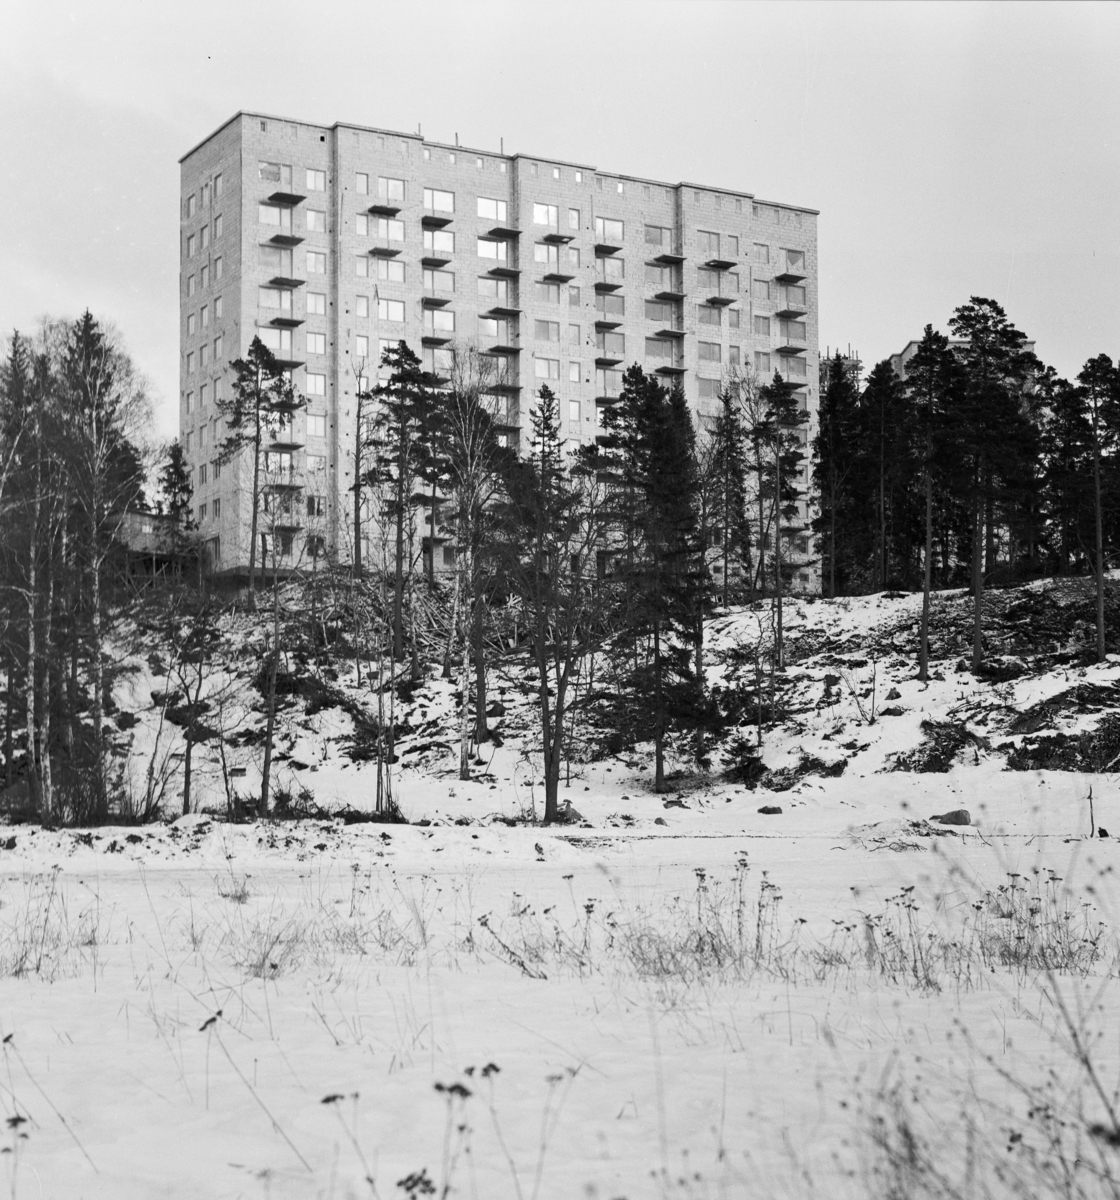 Flerbostadshus
Exteriör, bygge av höghus. Snötäckt sluttning med tallar i förgrunden.